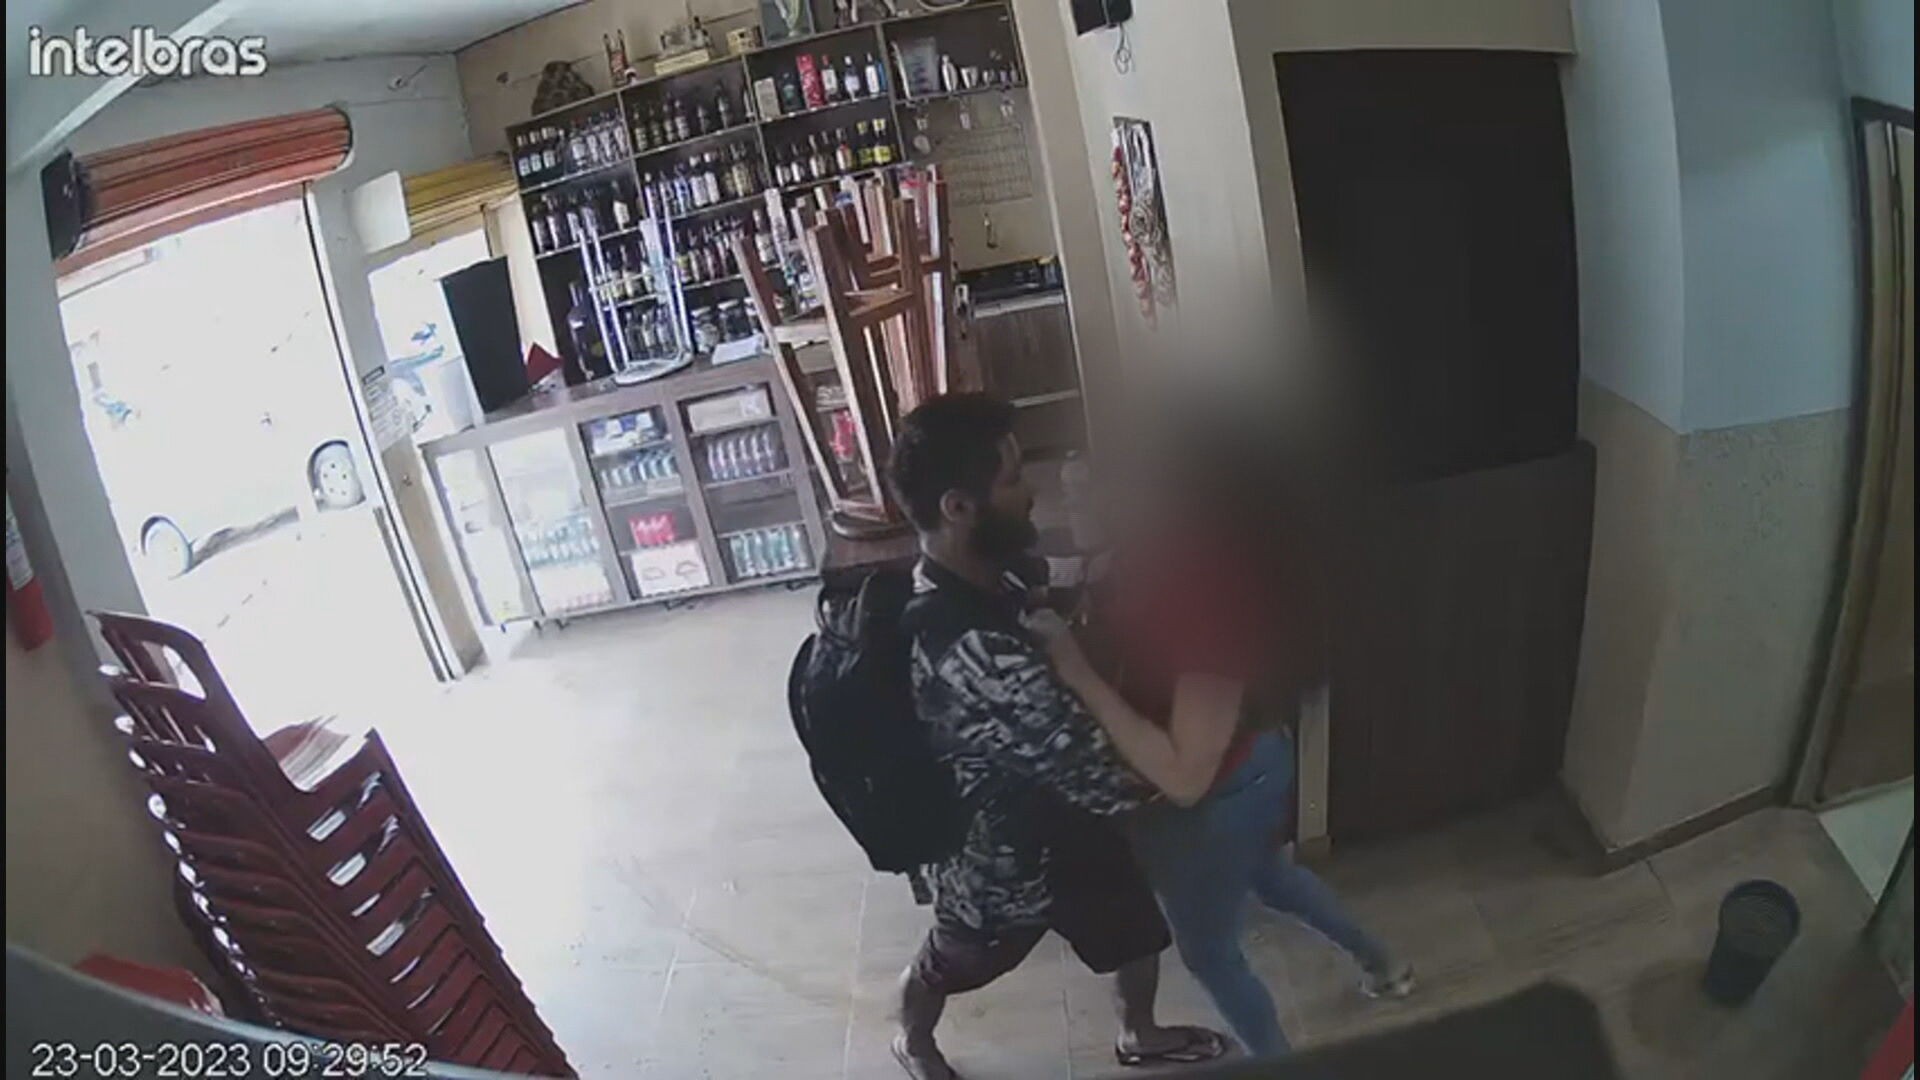 VÍDEO mostra momento em que ex-companheiro esfaqueia mulher em Vicente Pires, no DF